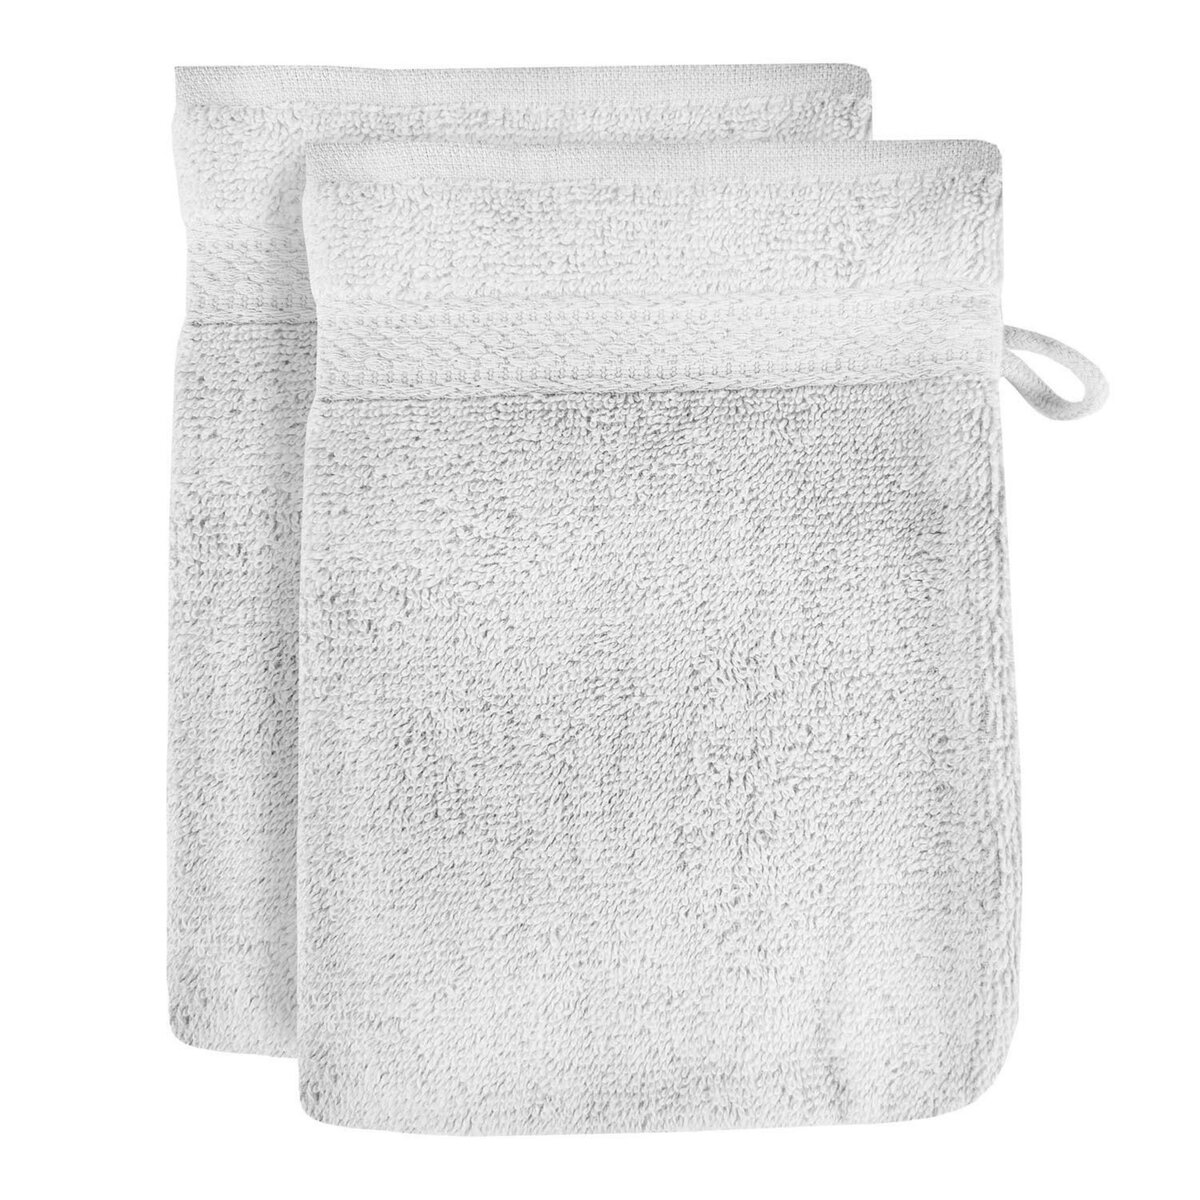 SOLEIL D'OCRE Lot de 2 gants de toilette en coton 500 gr/m2 16x21 cm LAGUNE blanc, par Soleil d'ocre